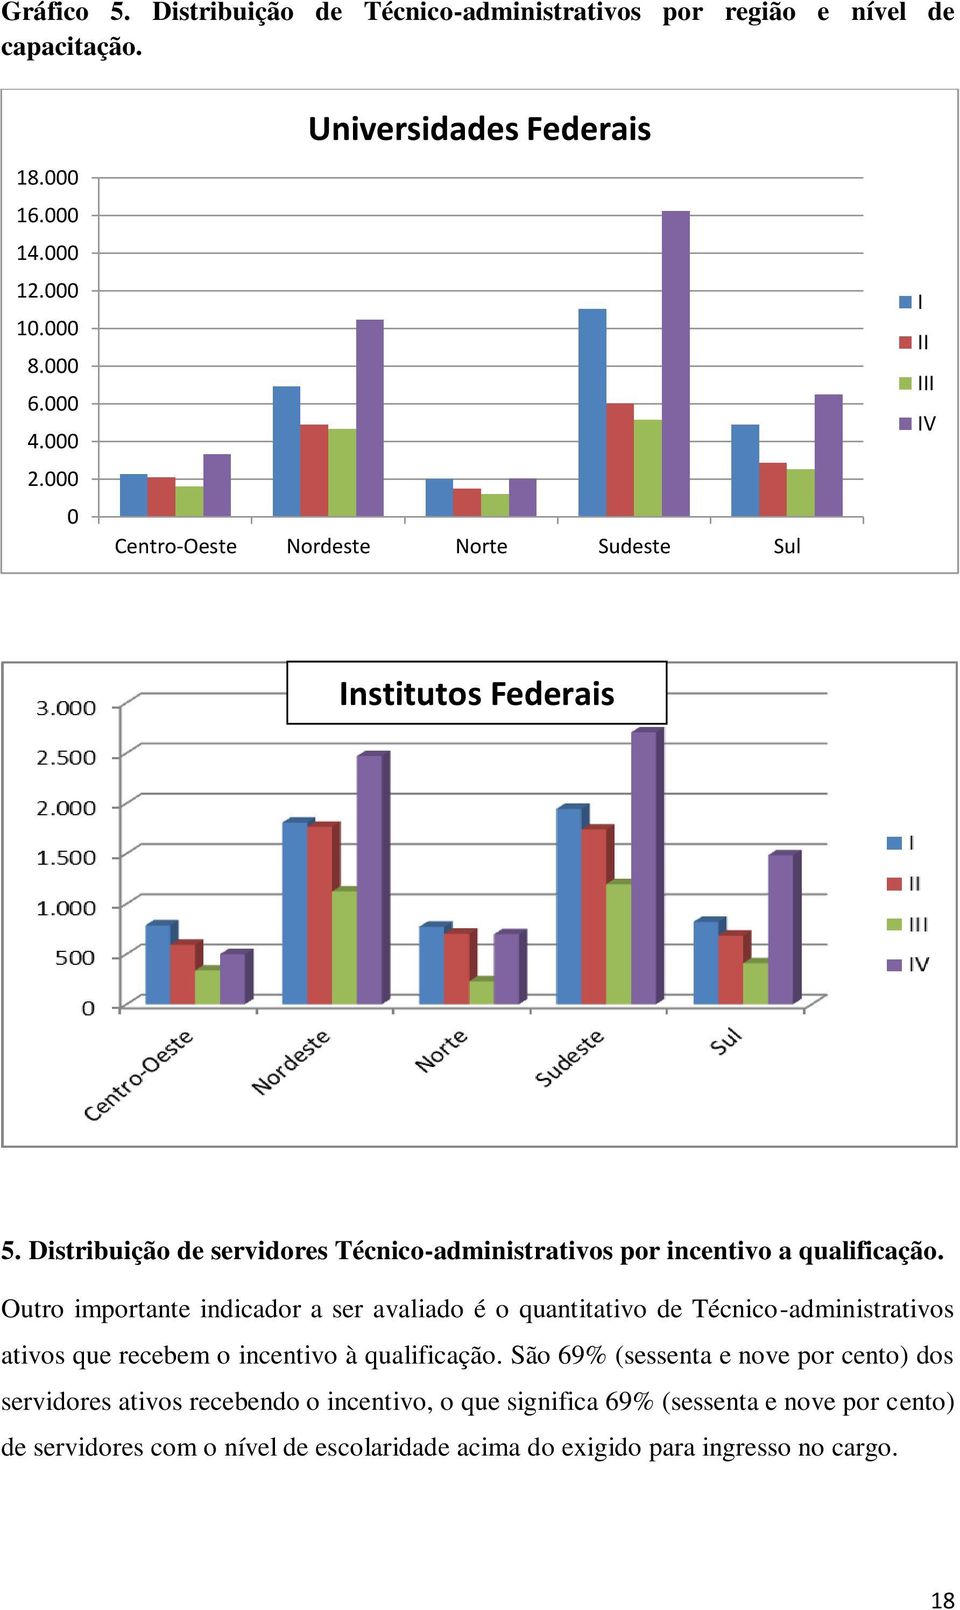 Distribuição de servidores Técnico-administrativos por incentivo a qualificação.